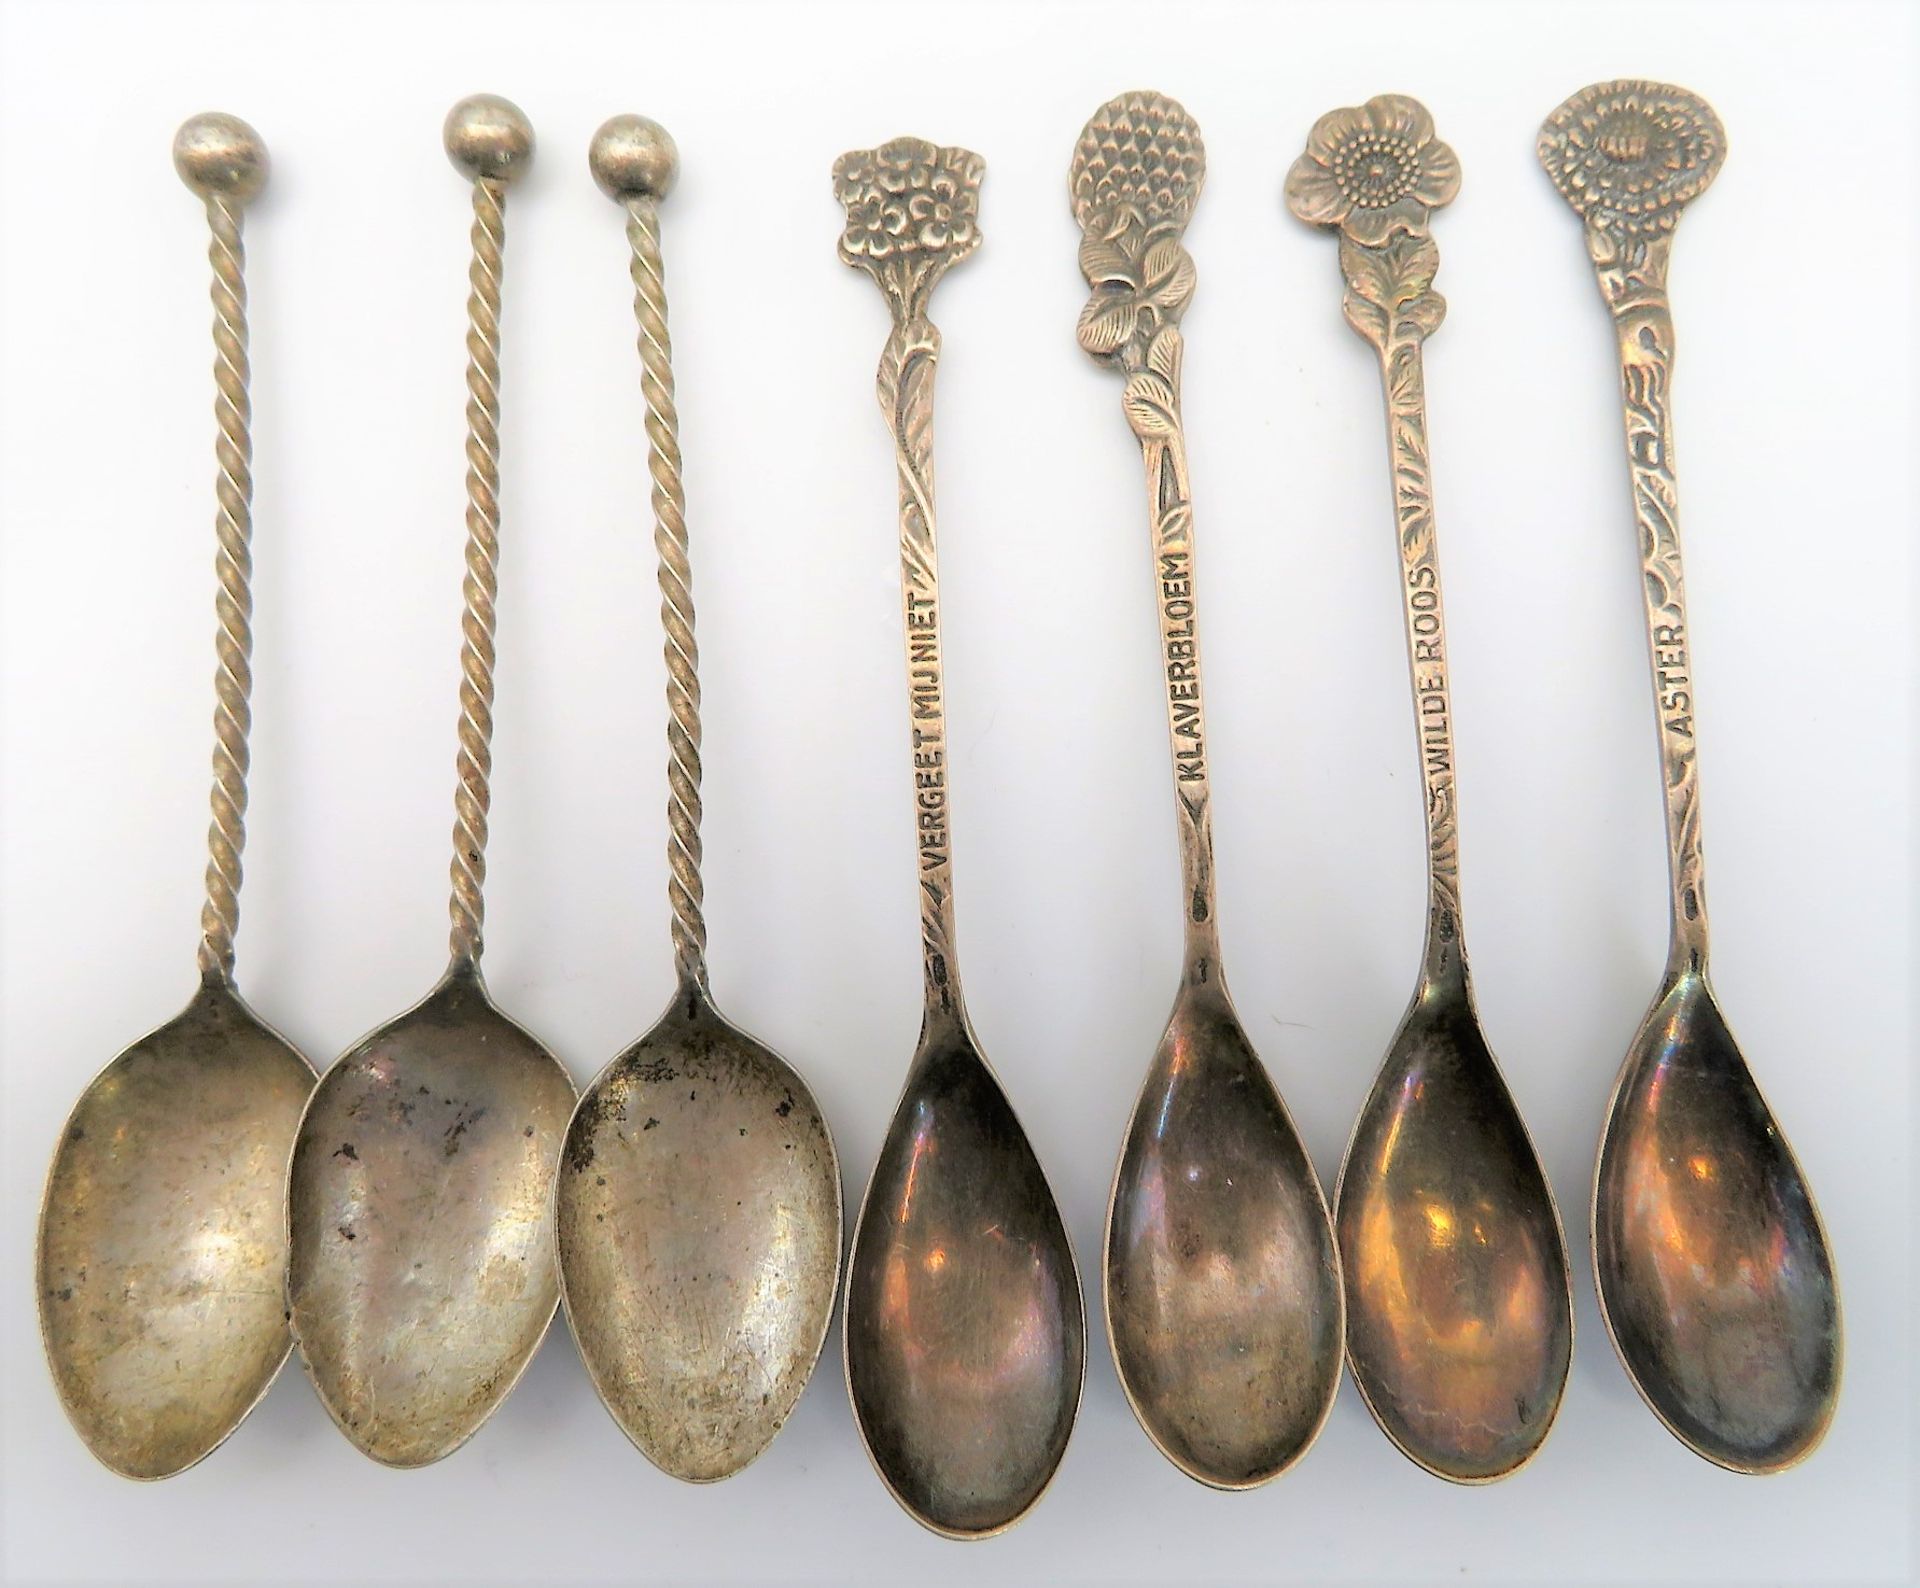 7 diverse Teelöffel, 835er Silber, gepunzt, 56 g, 3 x L 10 cm, 4 x L 10,5 cm.